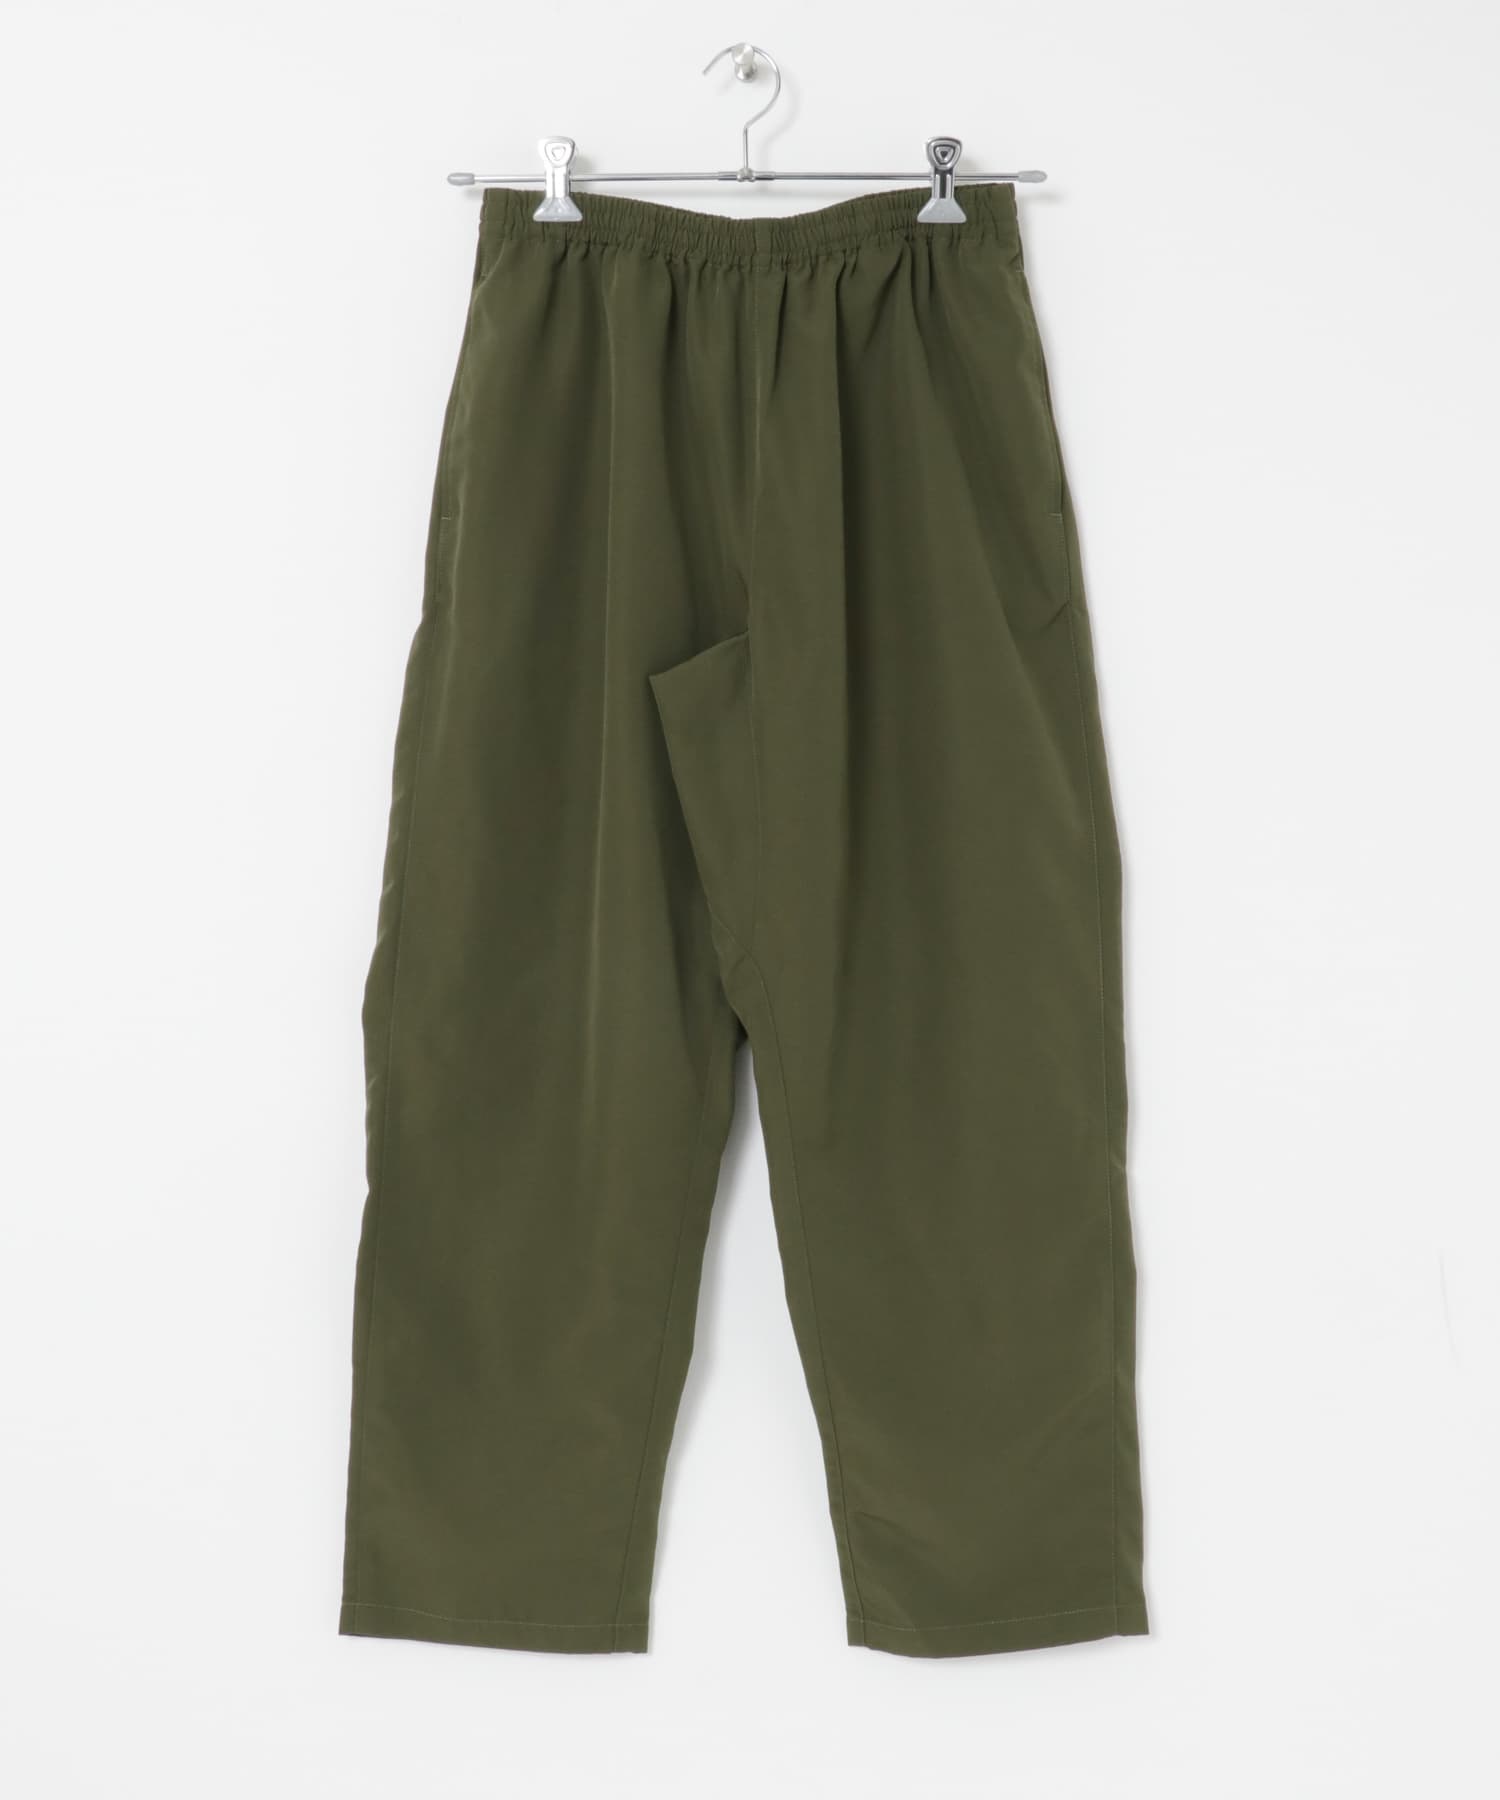 寬鬆輕便錐形褲(橄欖綠-M-OLIVE)